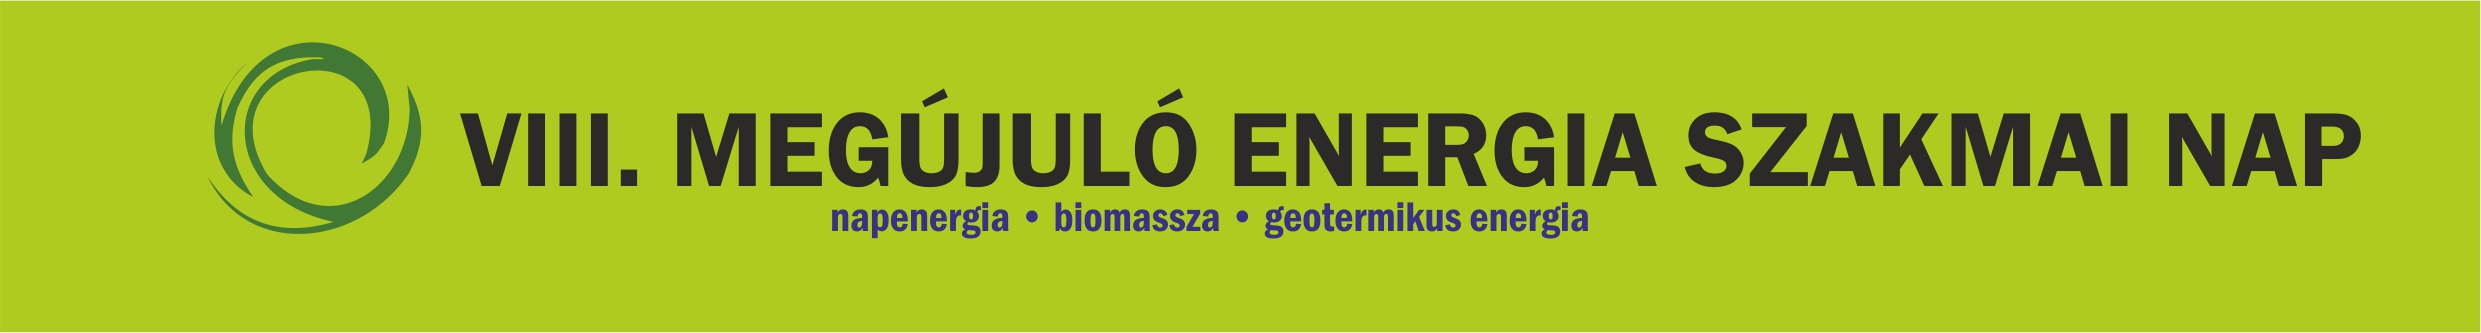 Megújuló energia szakmai nap logó